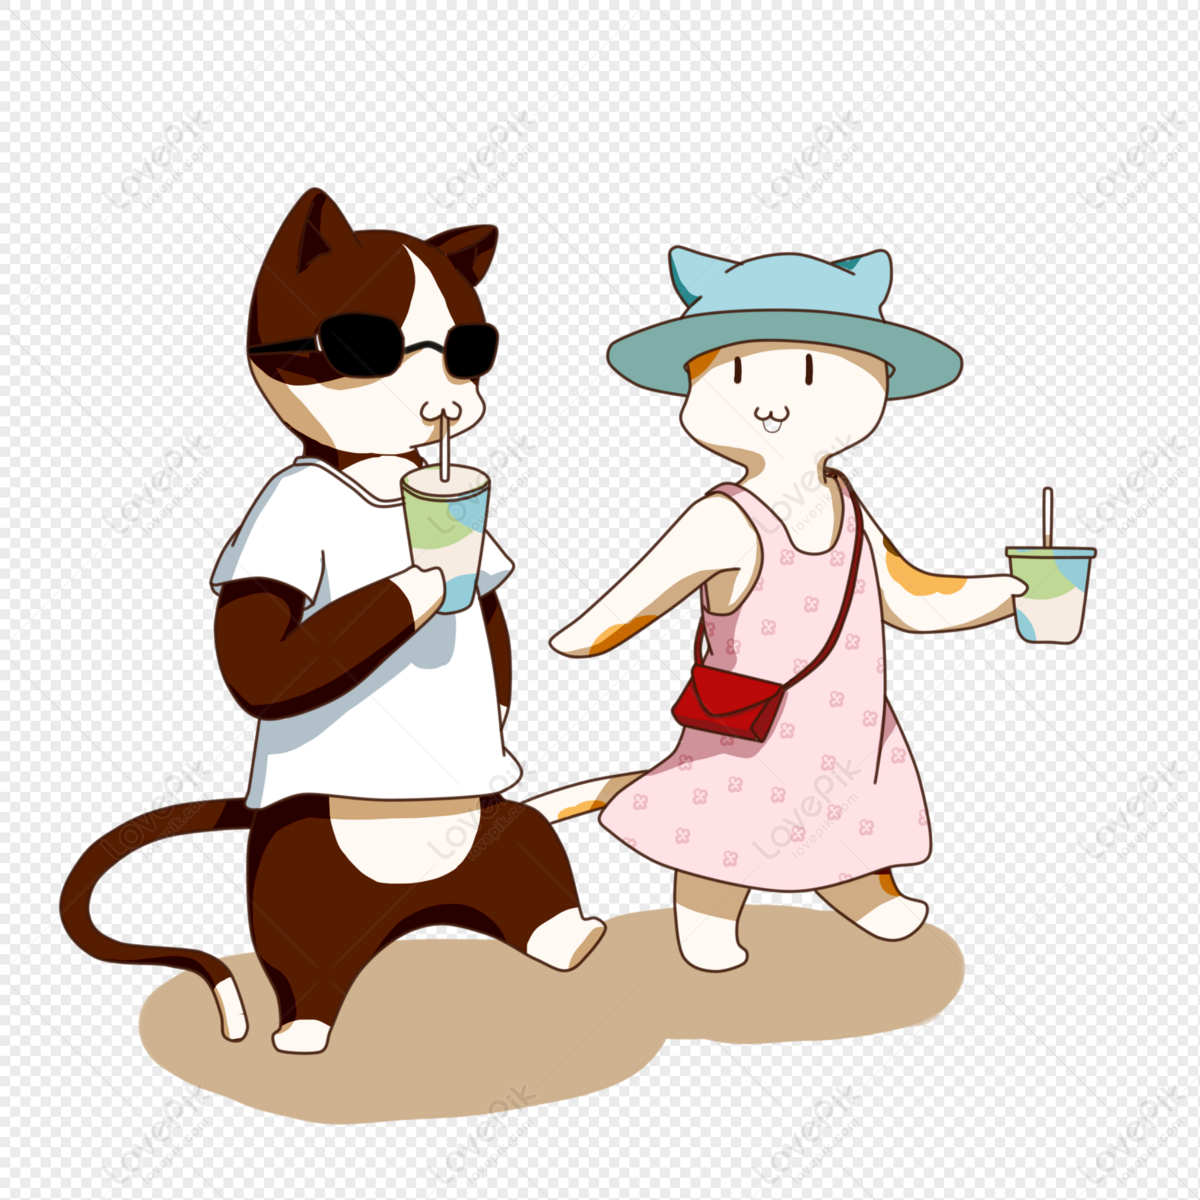 Hãy cùng đến với bức ảnh đáng yêu của mèo uống trà sữa để thấy sự đáng yêu và ngộ nghĩnh của chúng nhé! Xem ngay thôi!